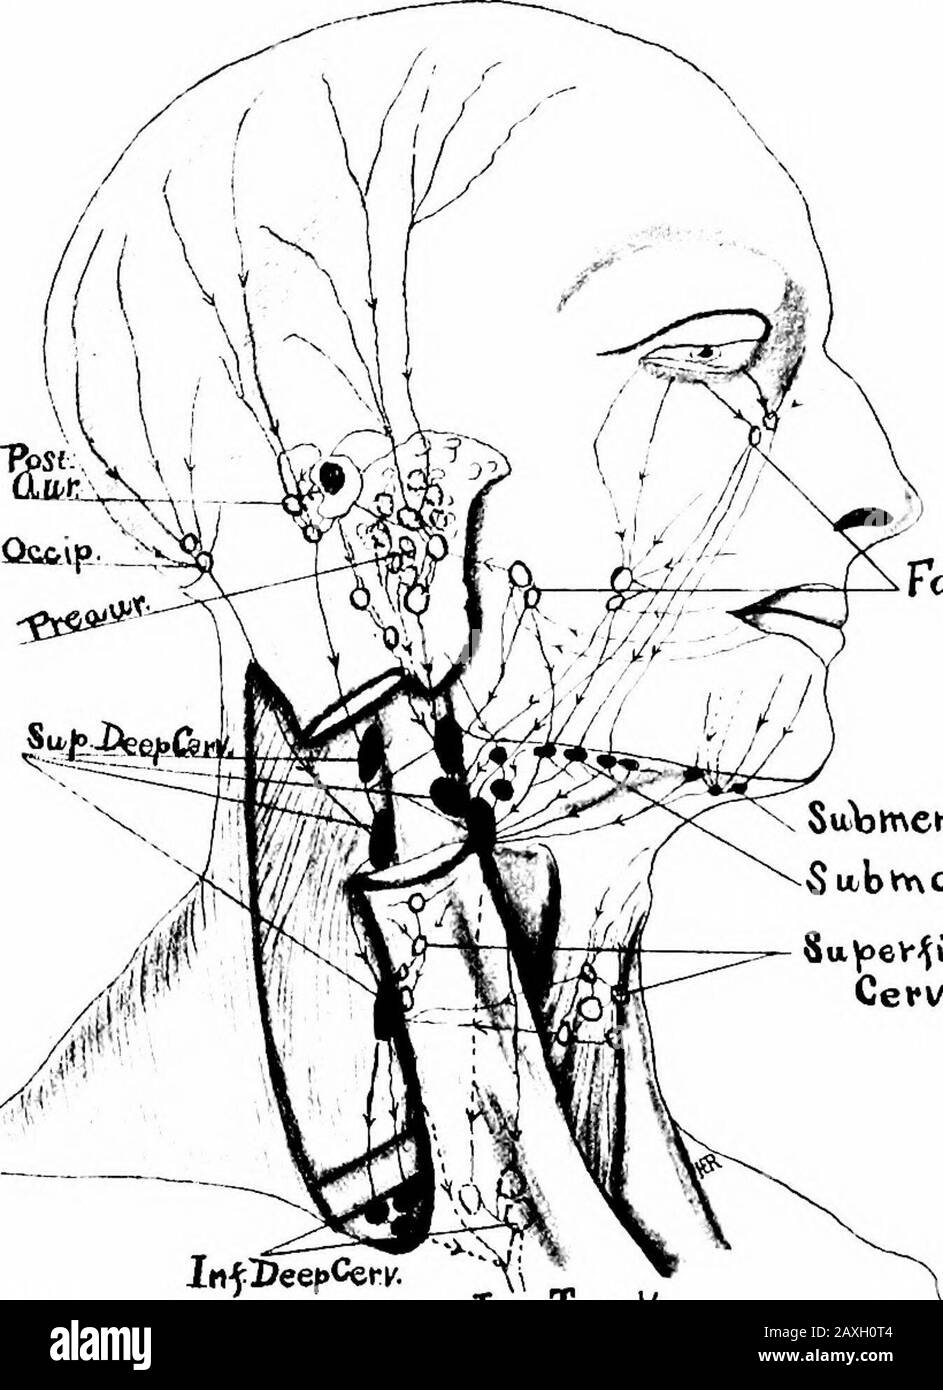 Un manuel d'anatomie . Su)menta/l In-jDeepCei-c. X   Fig. 187.—ganglions Lymphatiques et drainage lymphatique de la tête et du cou, indiqués comme cercles et nœuds profonds en noir solide. Nodeh superficiel dans la région de l'infraorbitale; {b) le groupe buccal ou buccinateur dans le thecheek; (c) le groupe supramandibulaire sur la mandibule au bord antérieur du muscle masseur. Ces groupes drainent le couvercle oculaire, la conjonctive, la peau et les muqueuses du nez et de la joue. Leurs efférateurs portent la lymphe aux nœuds submaxillaires et aux nœuds cervicaux profonds supérieurs. 5. Visage profond (L. faciales profimdce) (D).—Ce groupe Banque D'Images